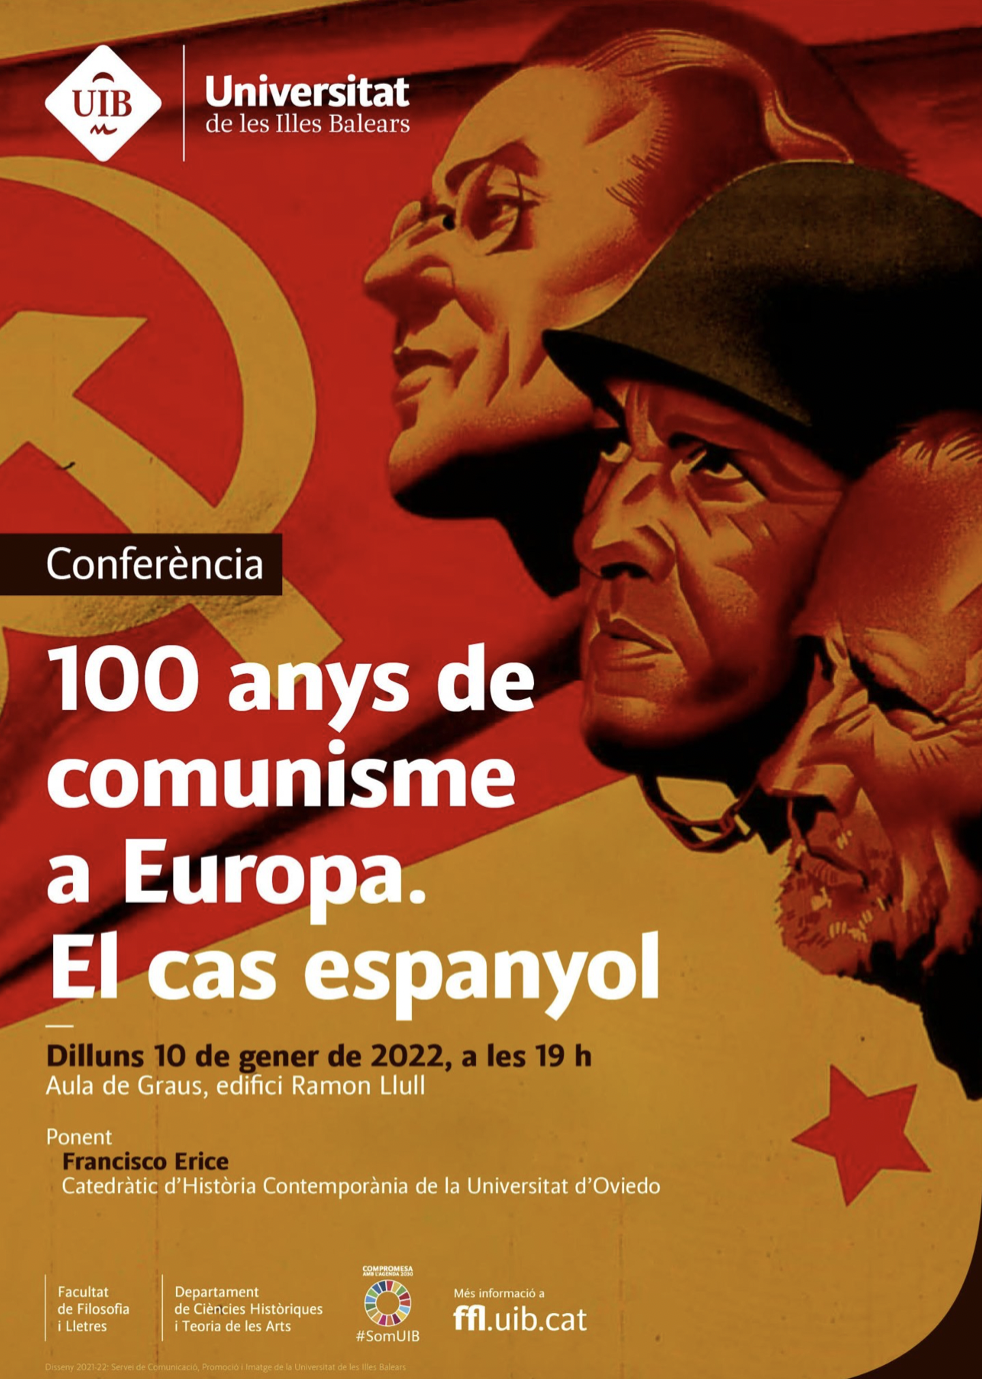 Conferència “100 anys de comunisme a Europa. El cas espanyol”.